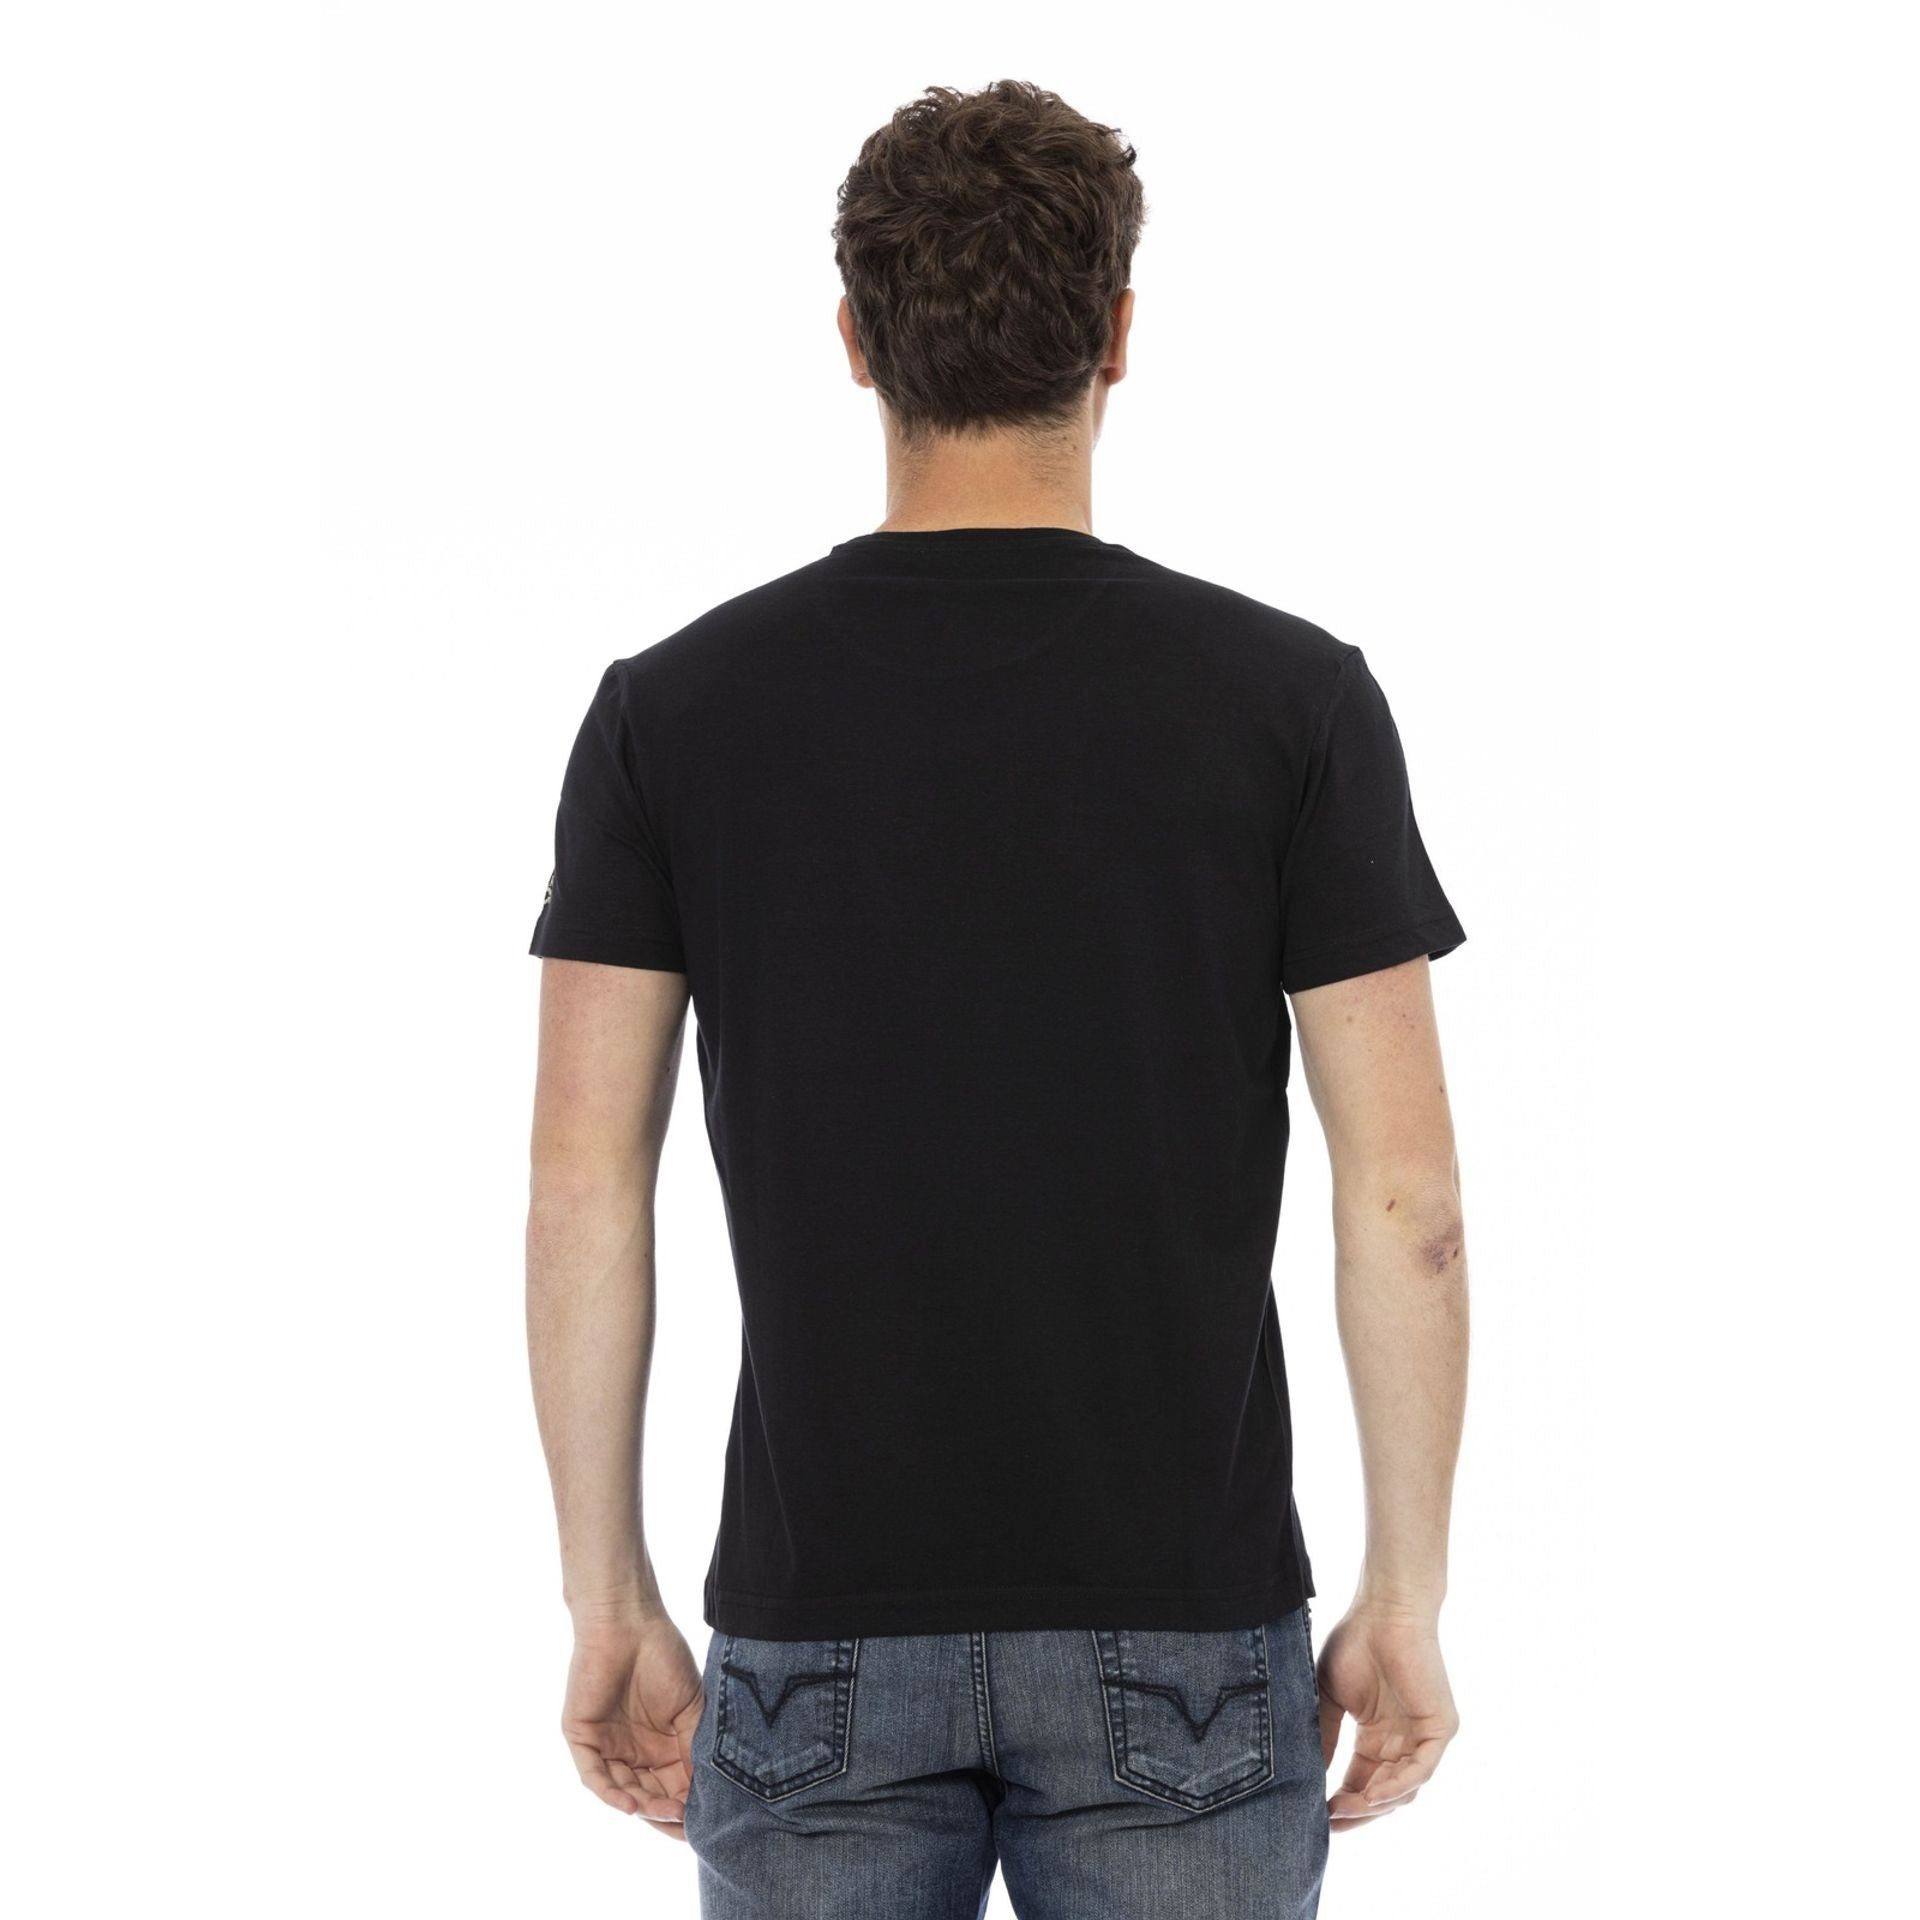 Schwarz zeichnet subtile, T-Shirt durch eine Es Logo-Muster Note sich aber Action aus, verleiht Trussardi das T-Shirts, das stilvolle Trussardi